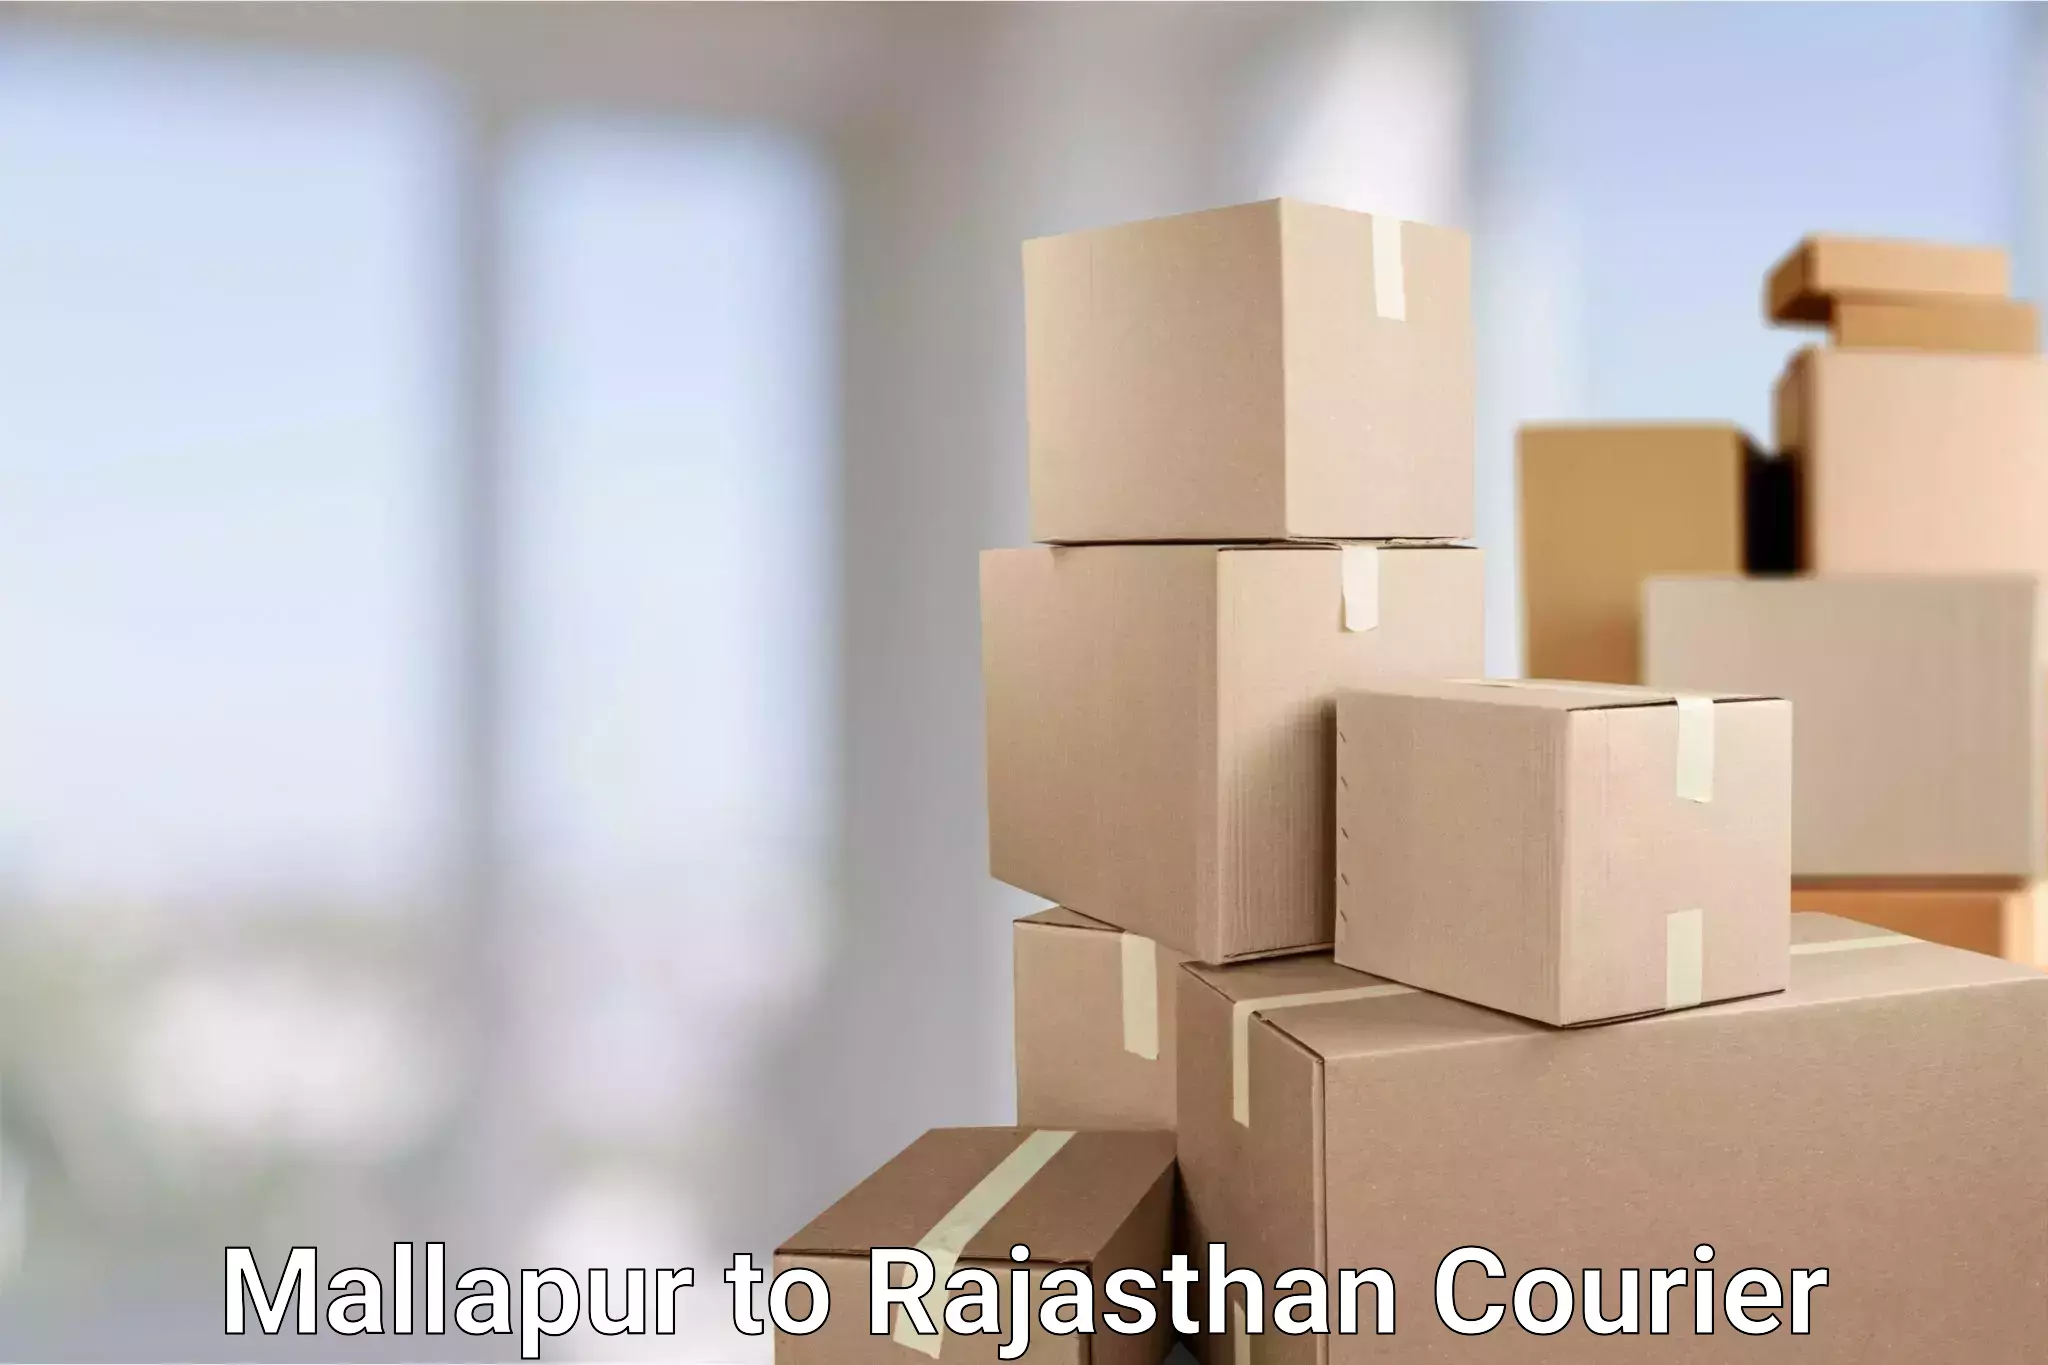 Courier service comparison Mallapur to Chaksu